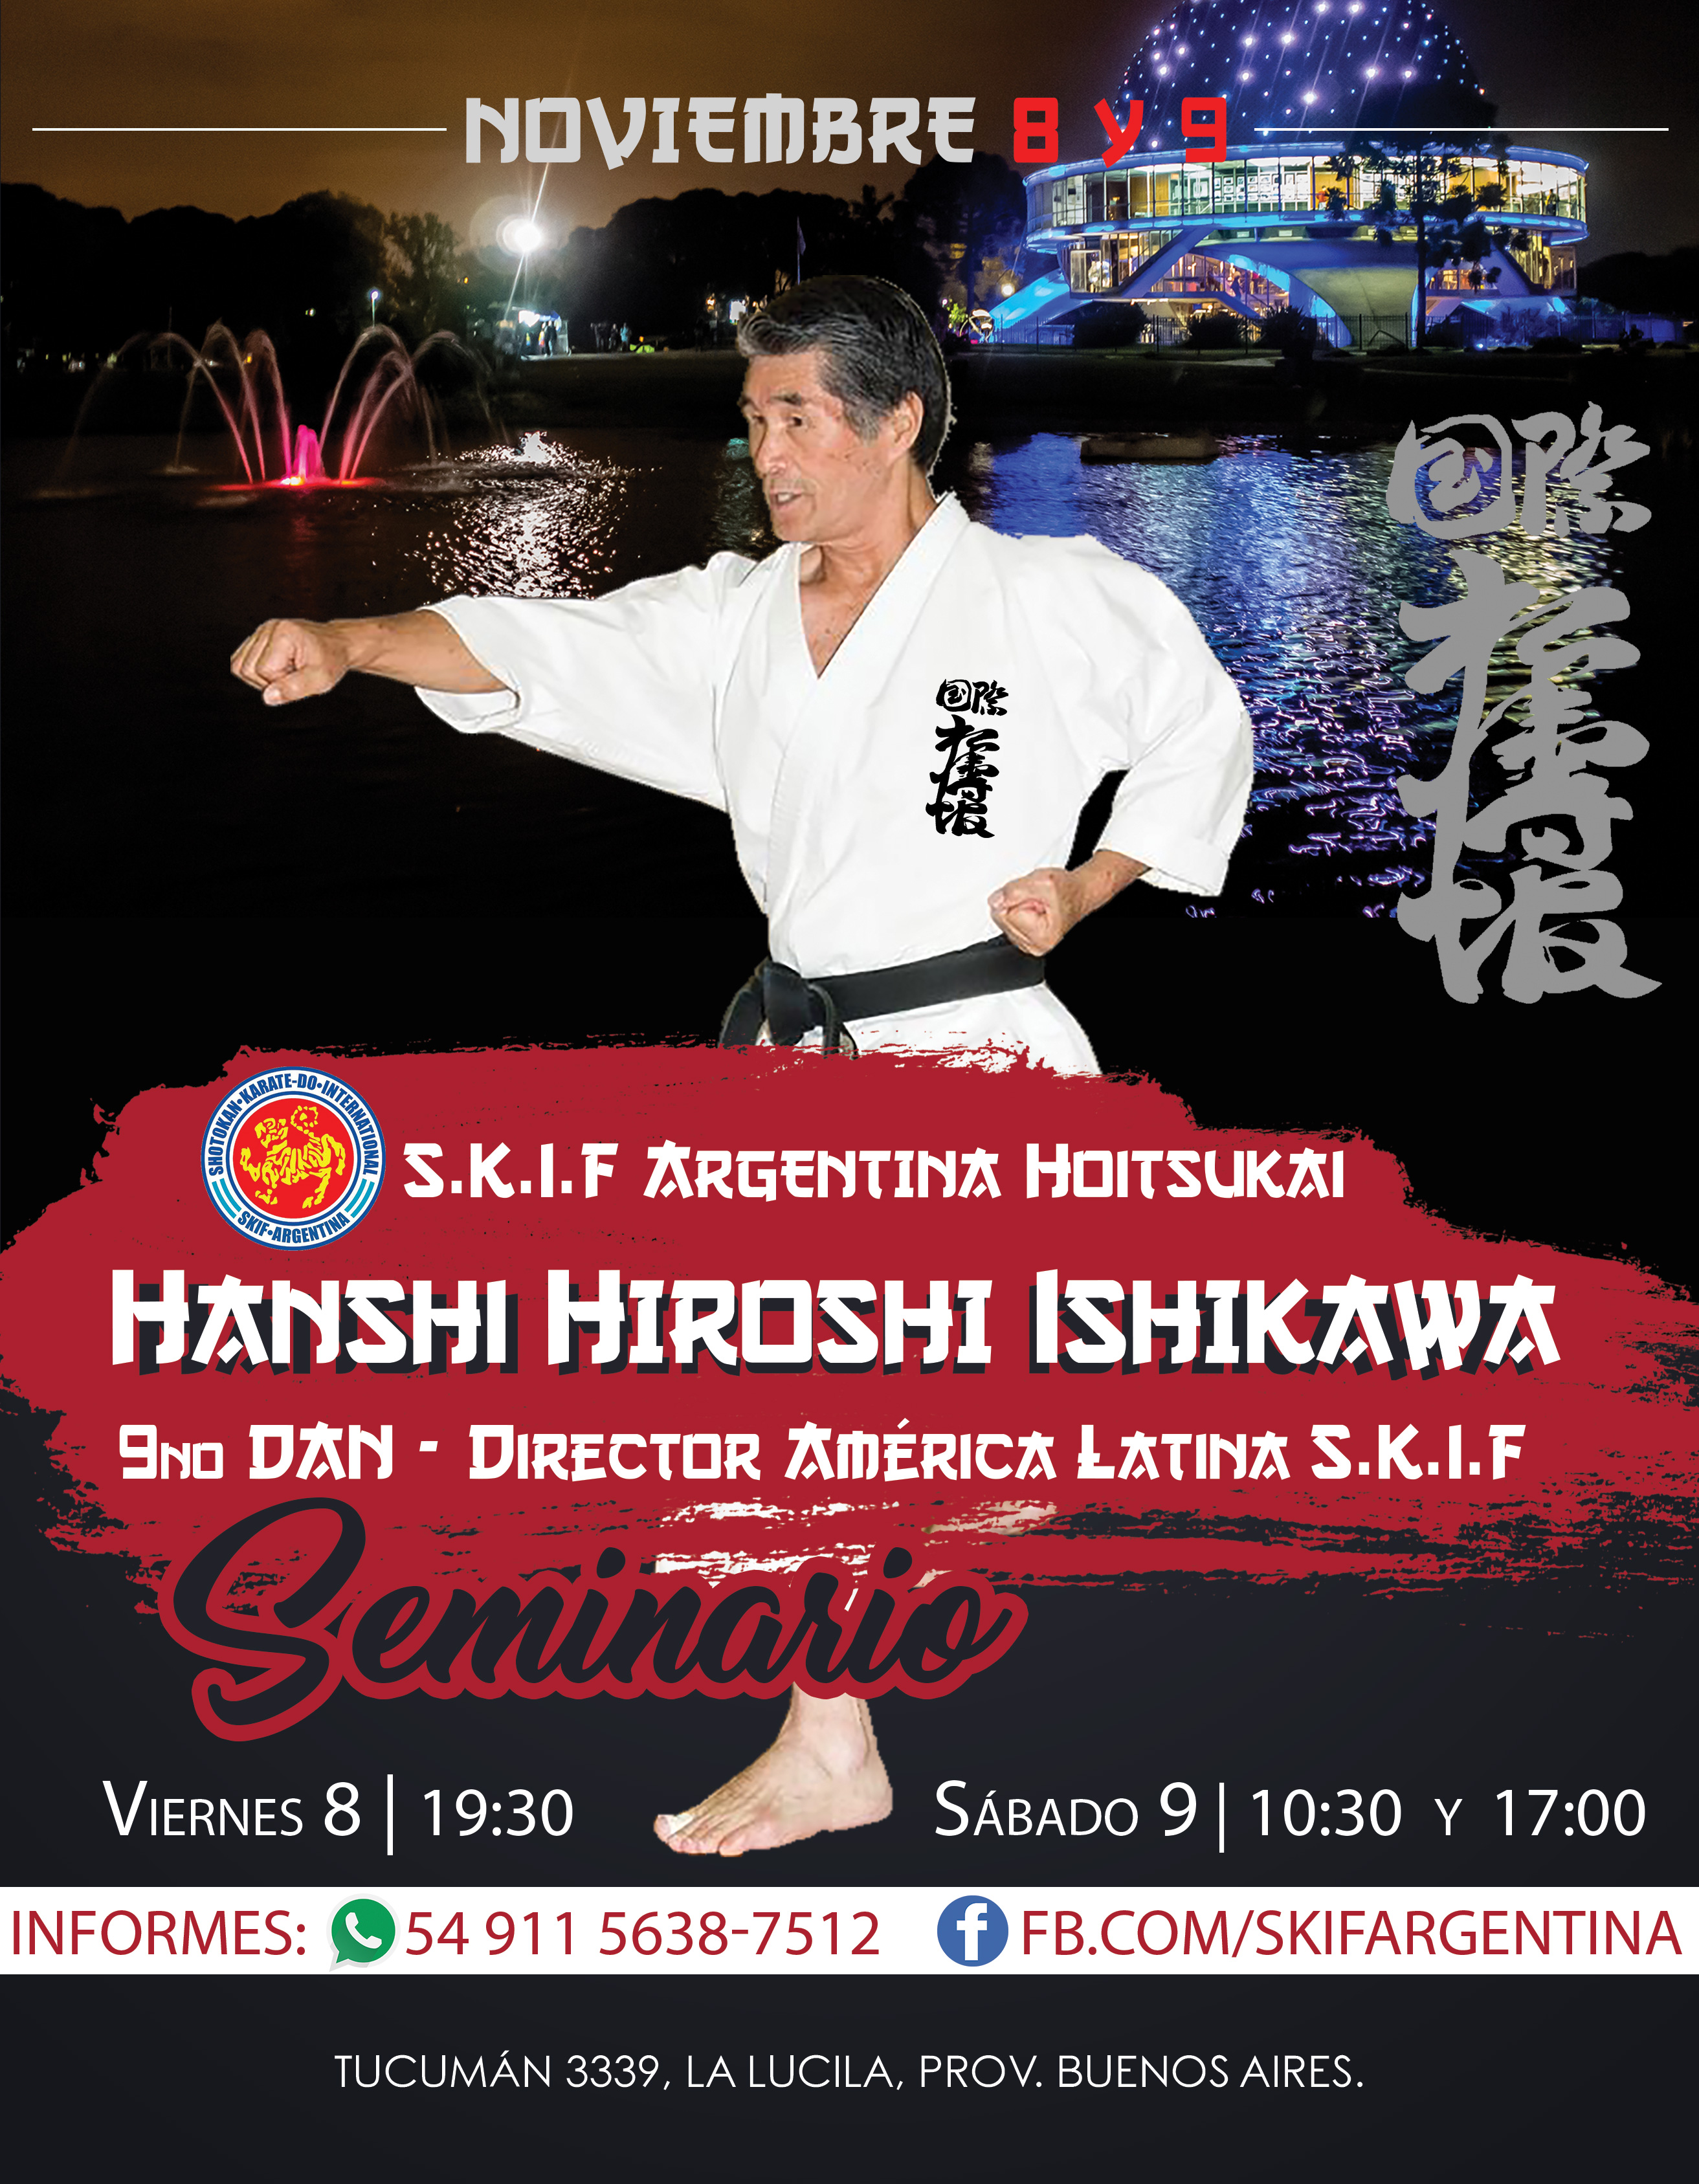 Seminario SKIF a cargo de Hanshi Hiroshi Ishikawa. Viernes 8 y Sábado 9 de Noviembre.